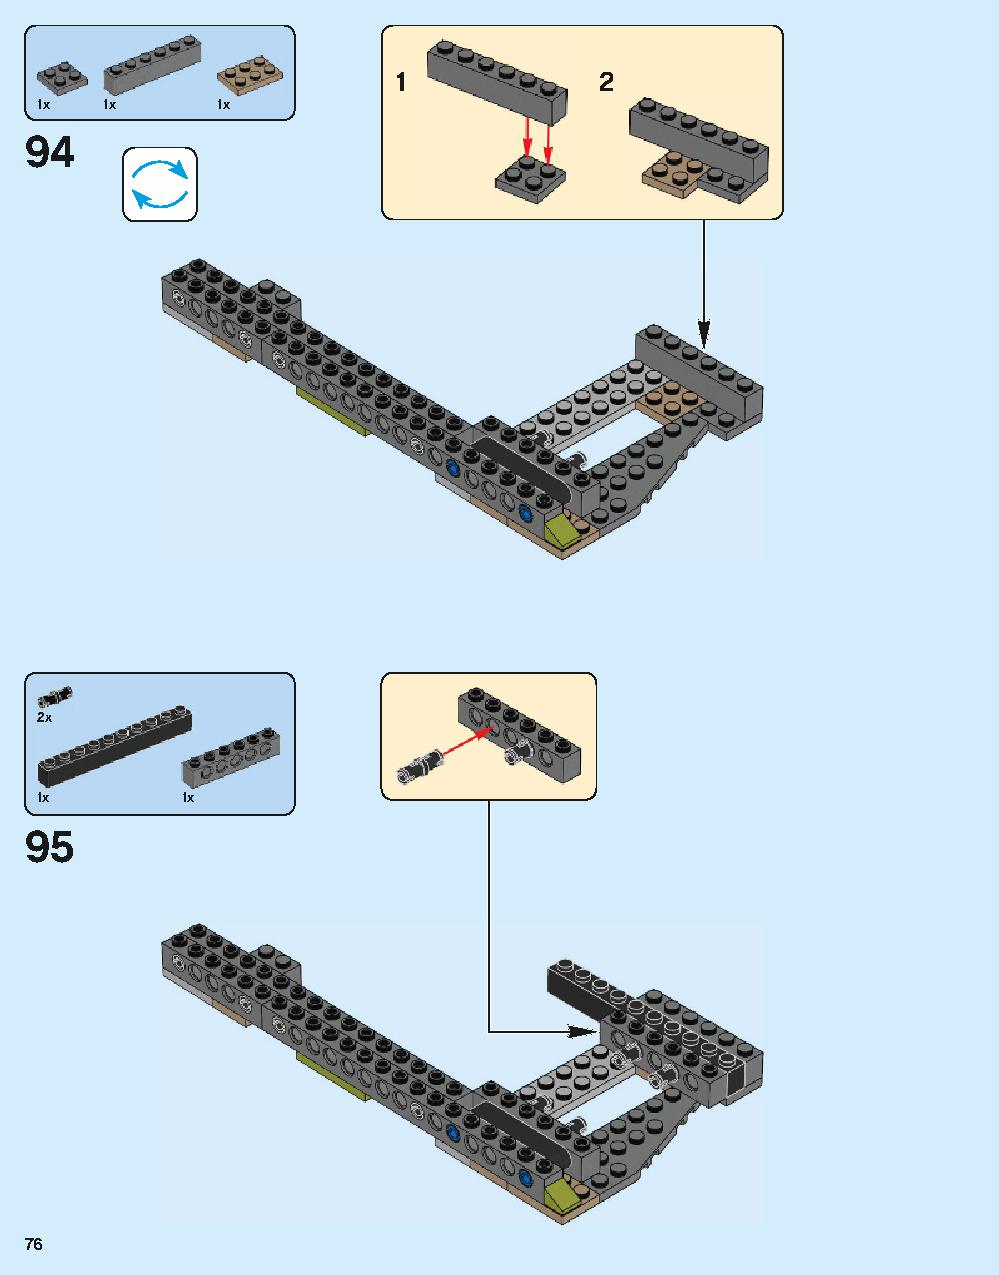 ホグワーツ城 71043 レゴの商品情報 レゴの説明書・組立方法 76 page